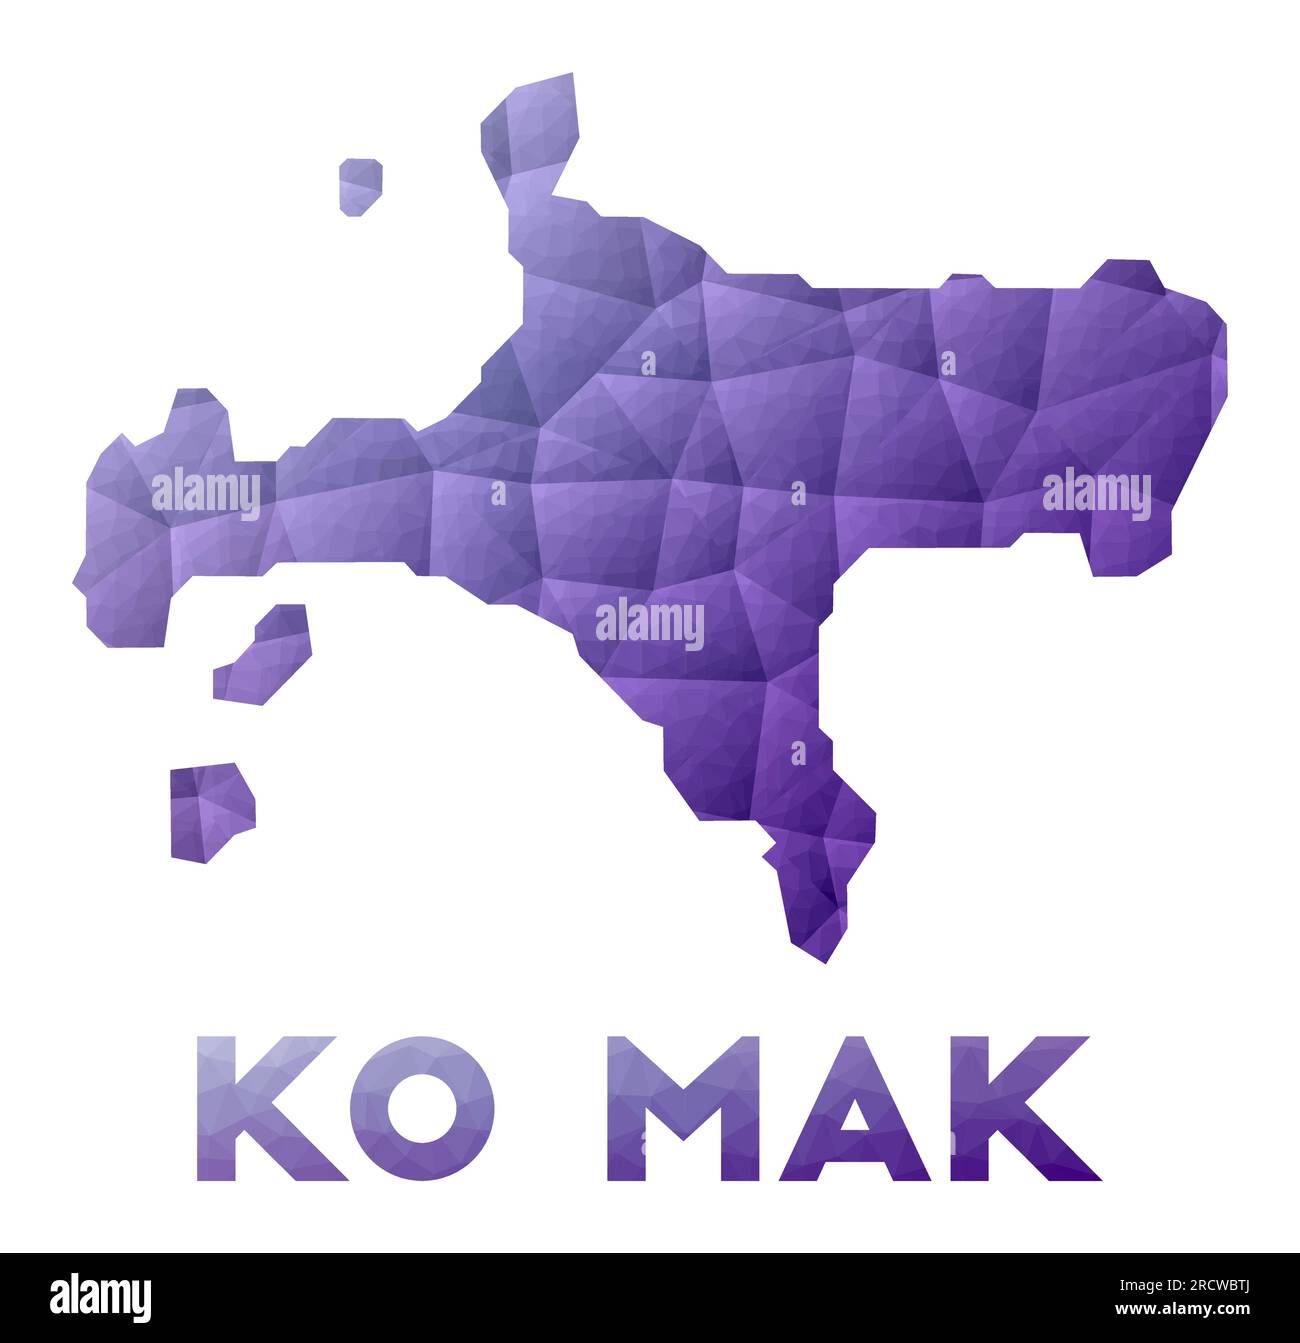 Plan de Ko Mak. Illustration basse poly de l'île. Motif géométrique violet. Illustration vectorielle polygonale. Illustration de Vecteur